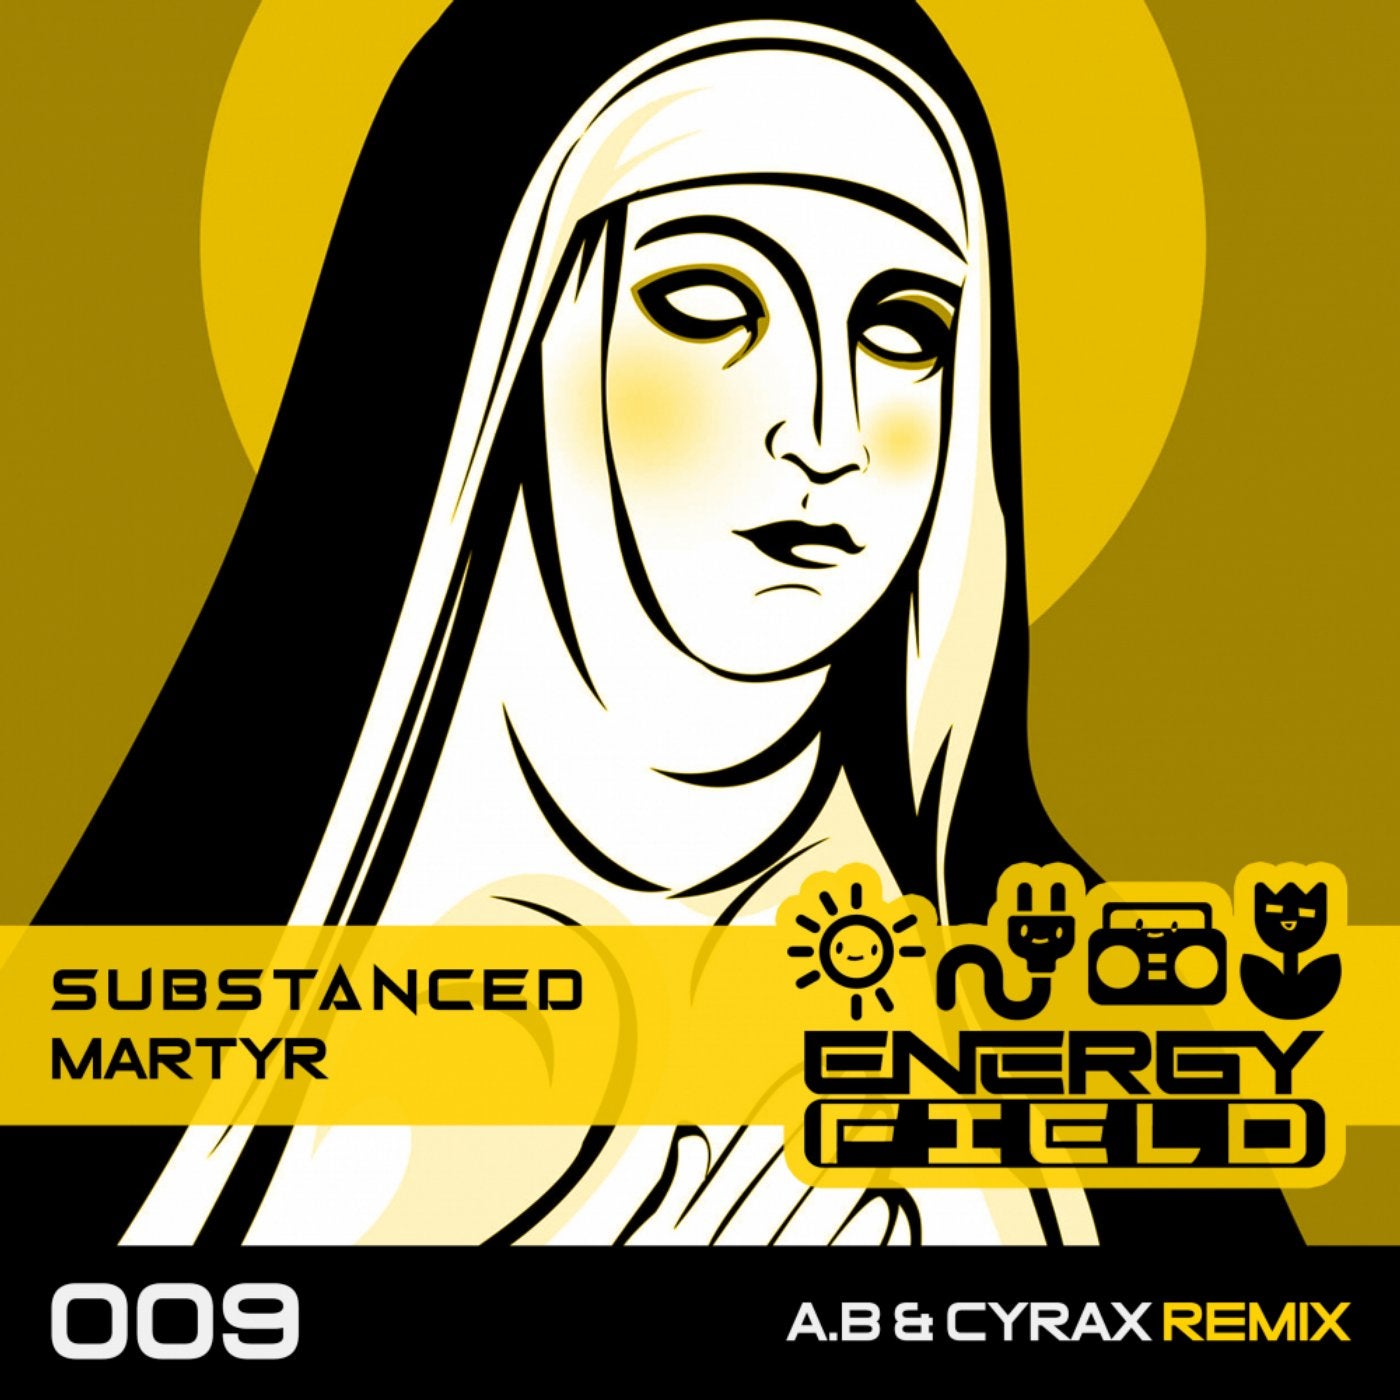 Martyr (A.B & Cyrax Remix)